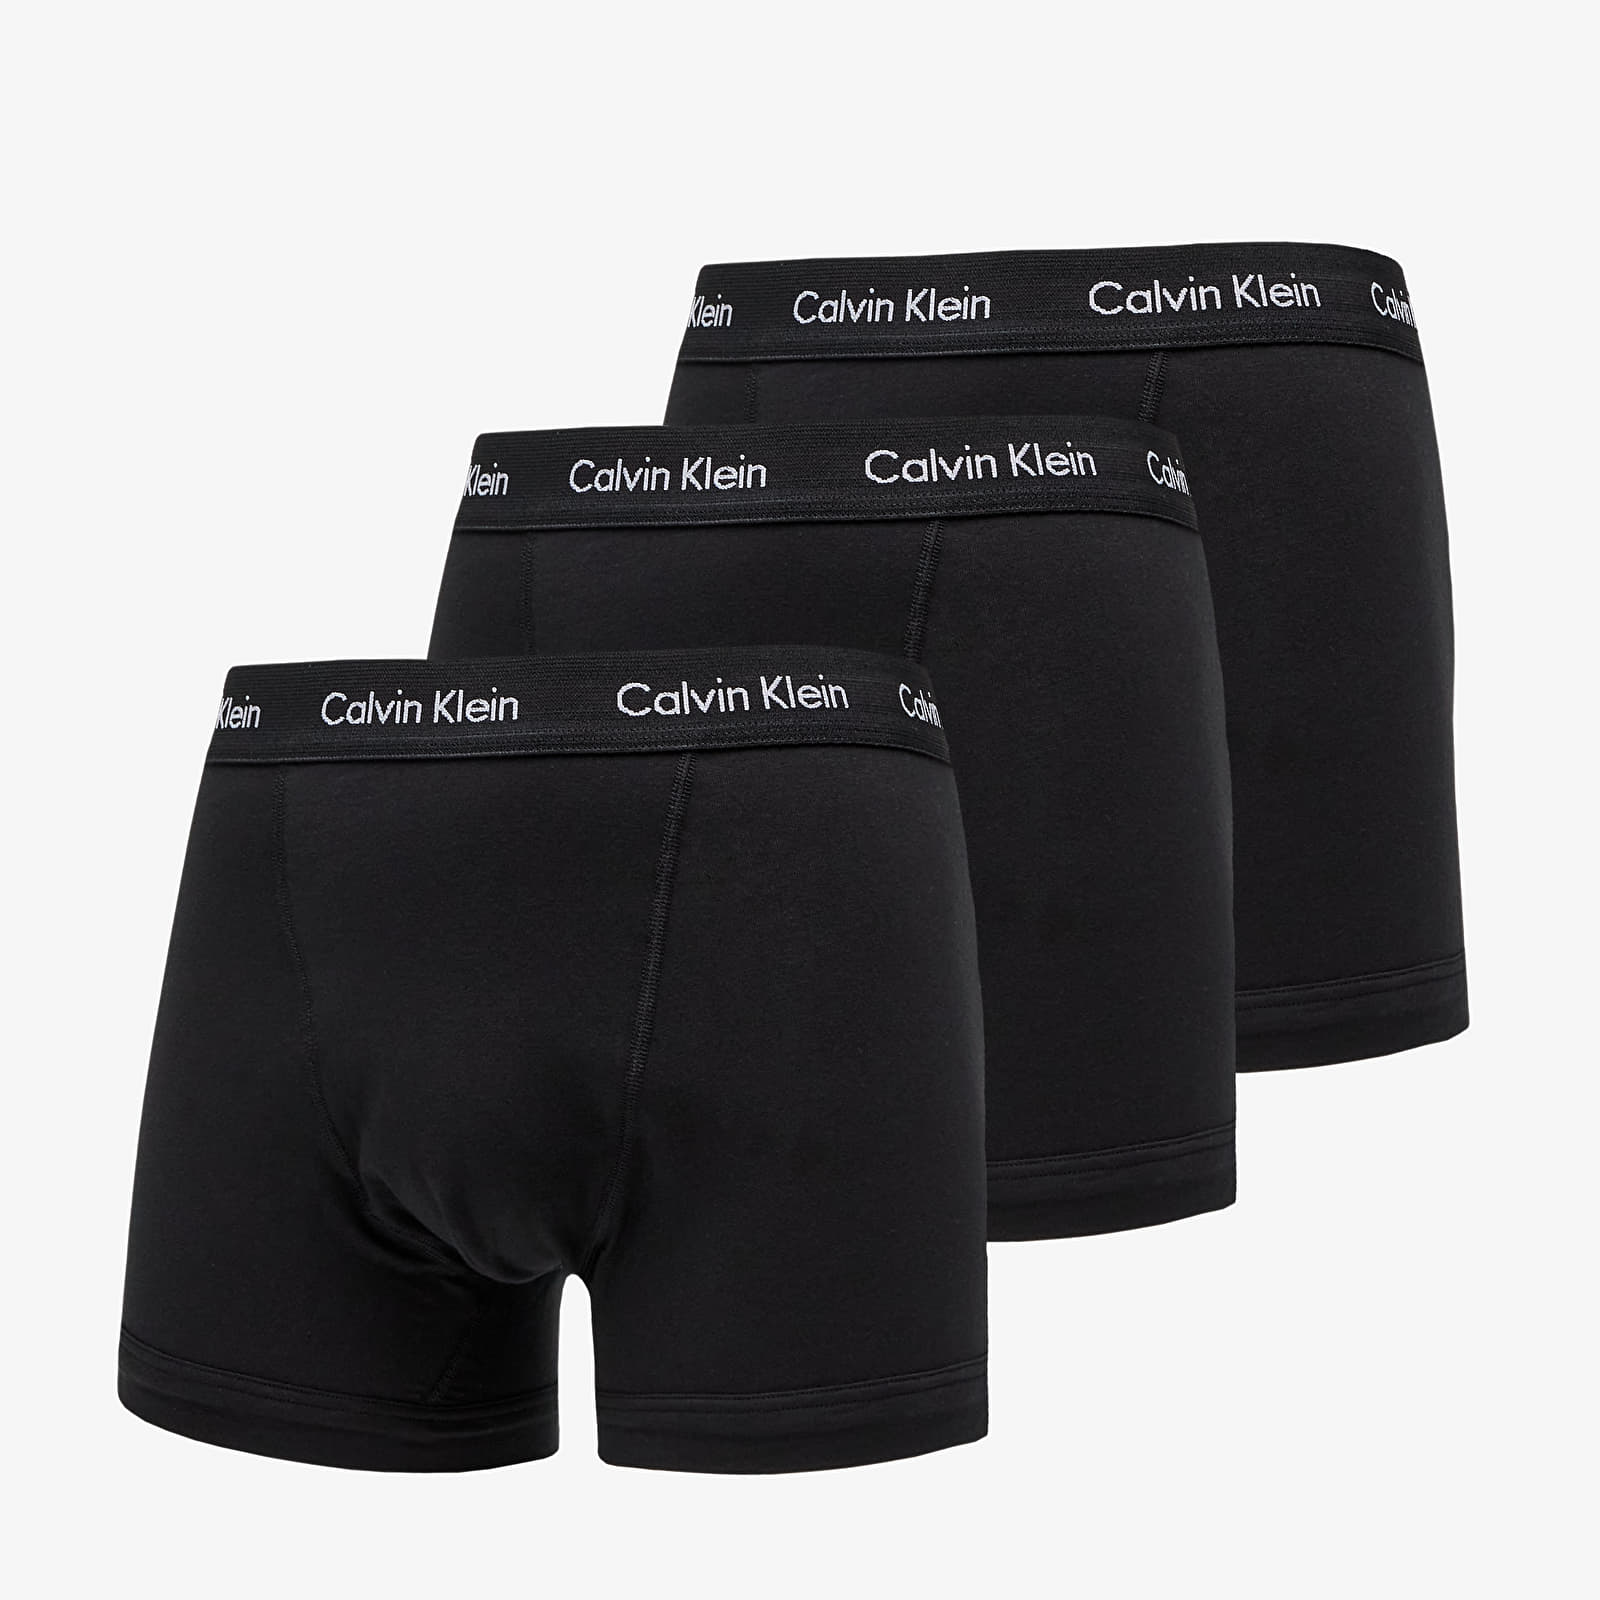 Bokserki Calvin Klein Trunks 3-Pack Black